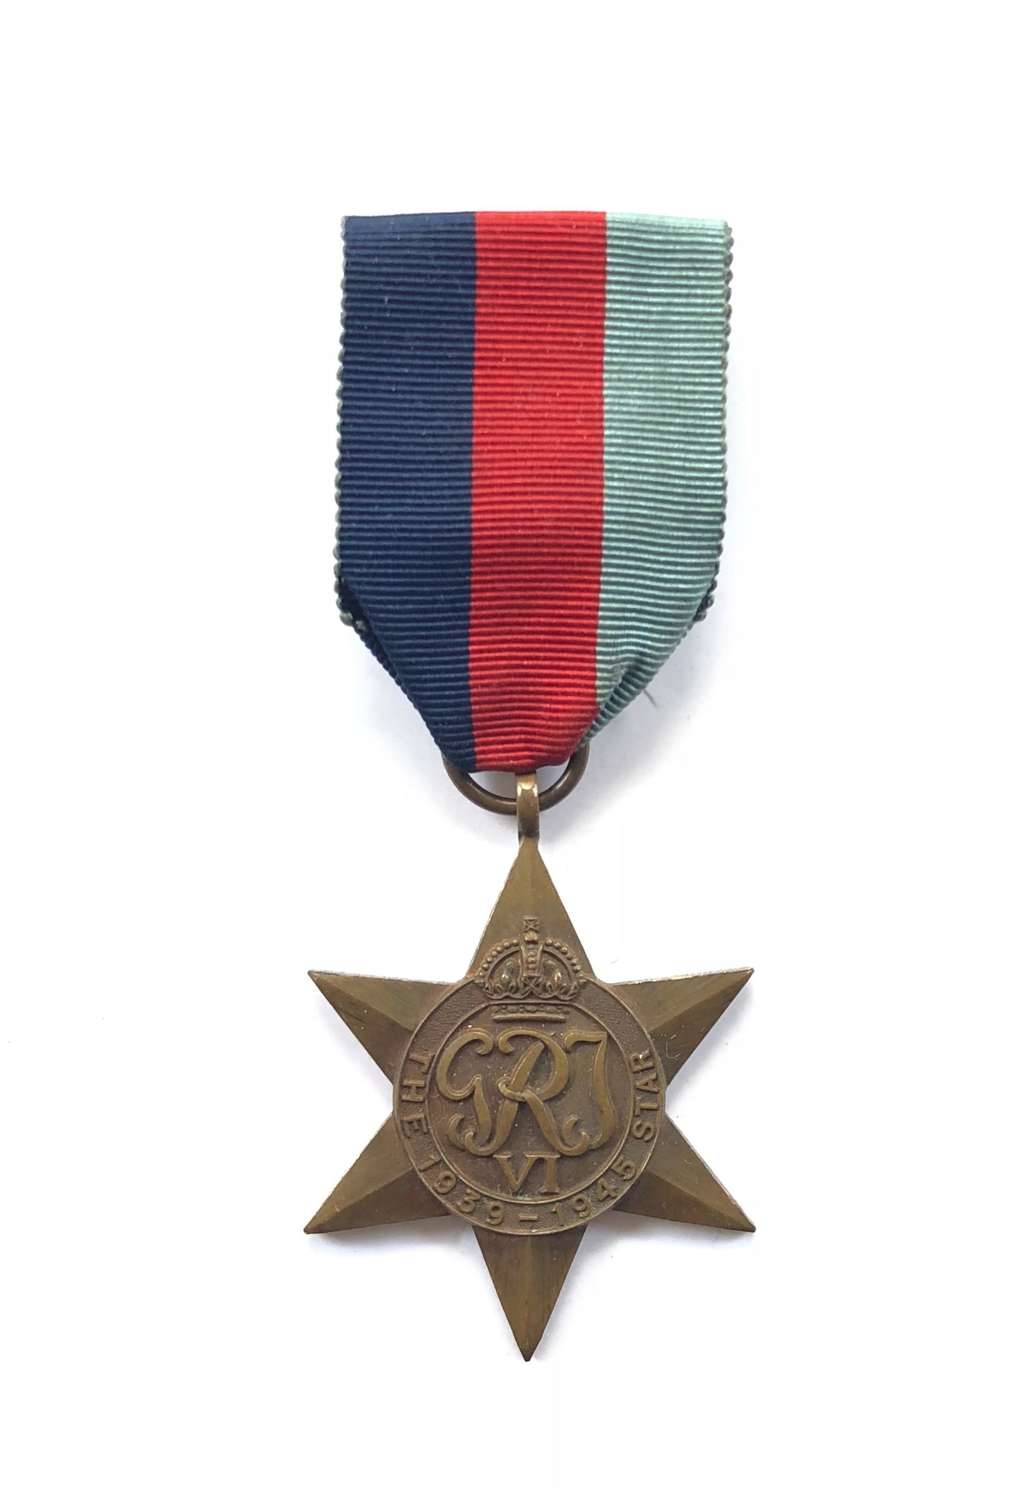 WW2 Army Royal Navy RAF 1939/45 Star Medal.